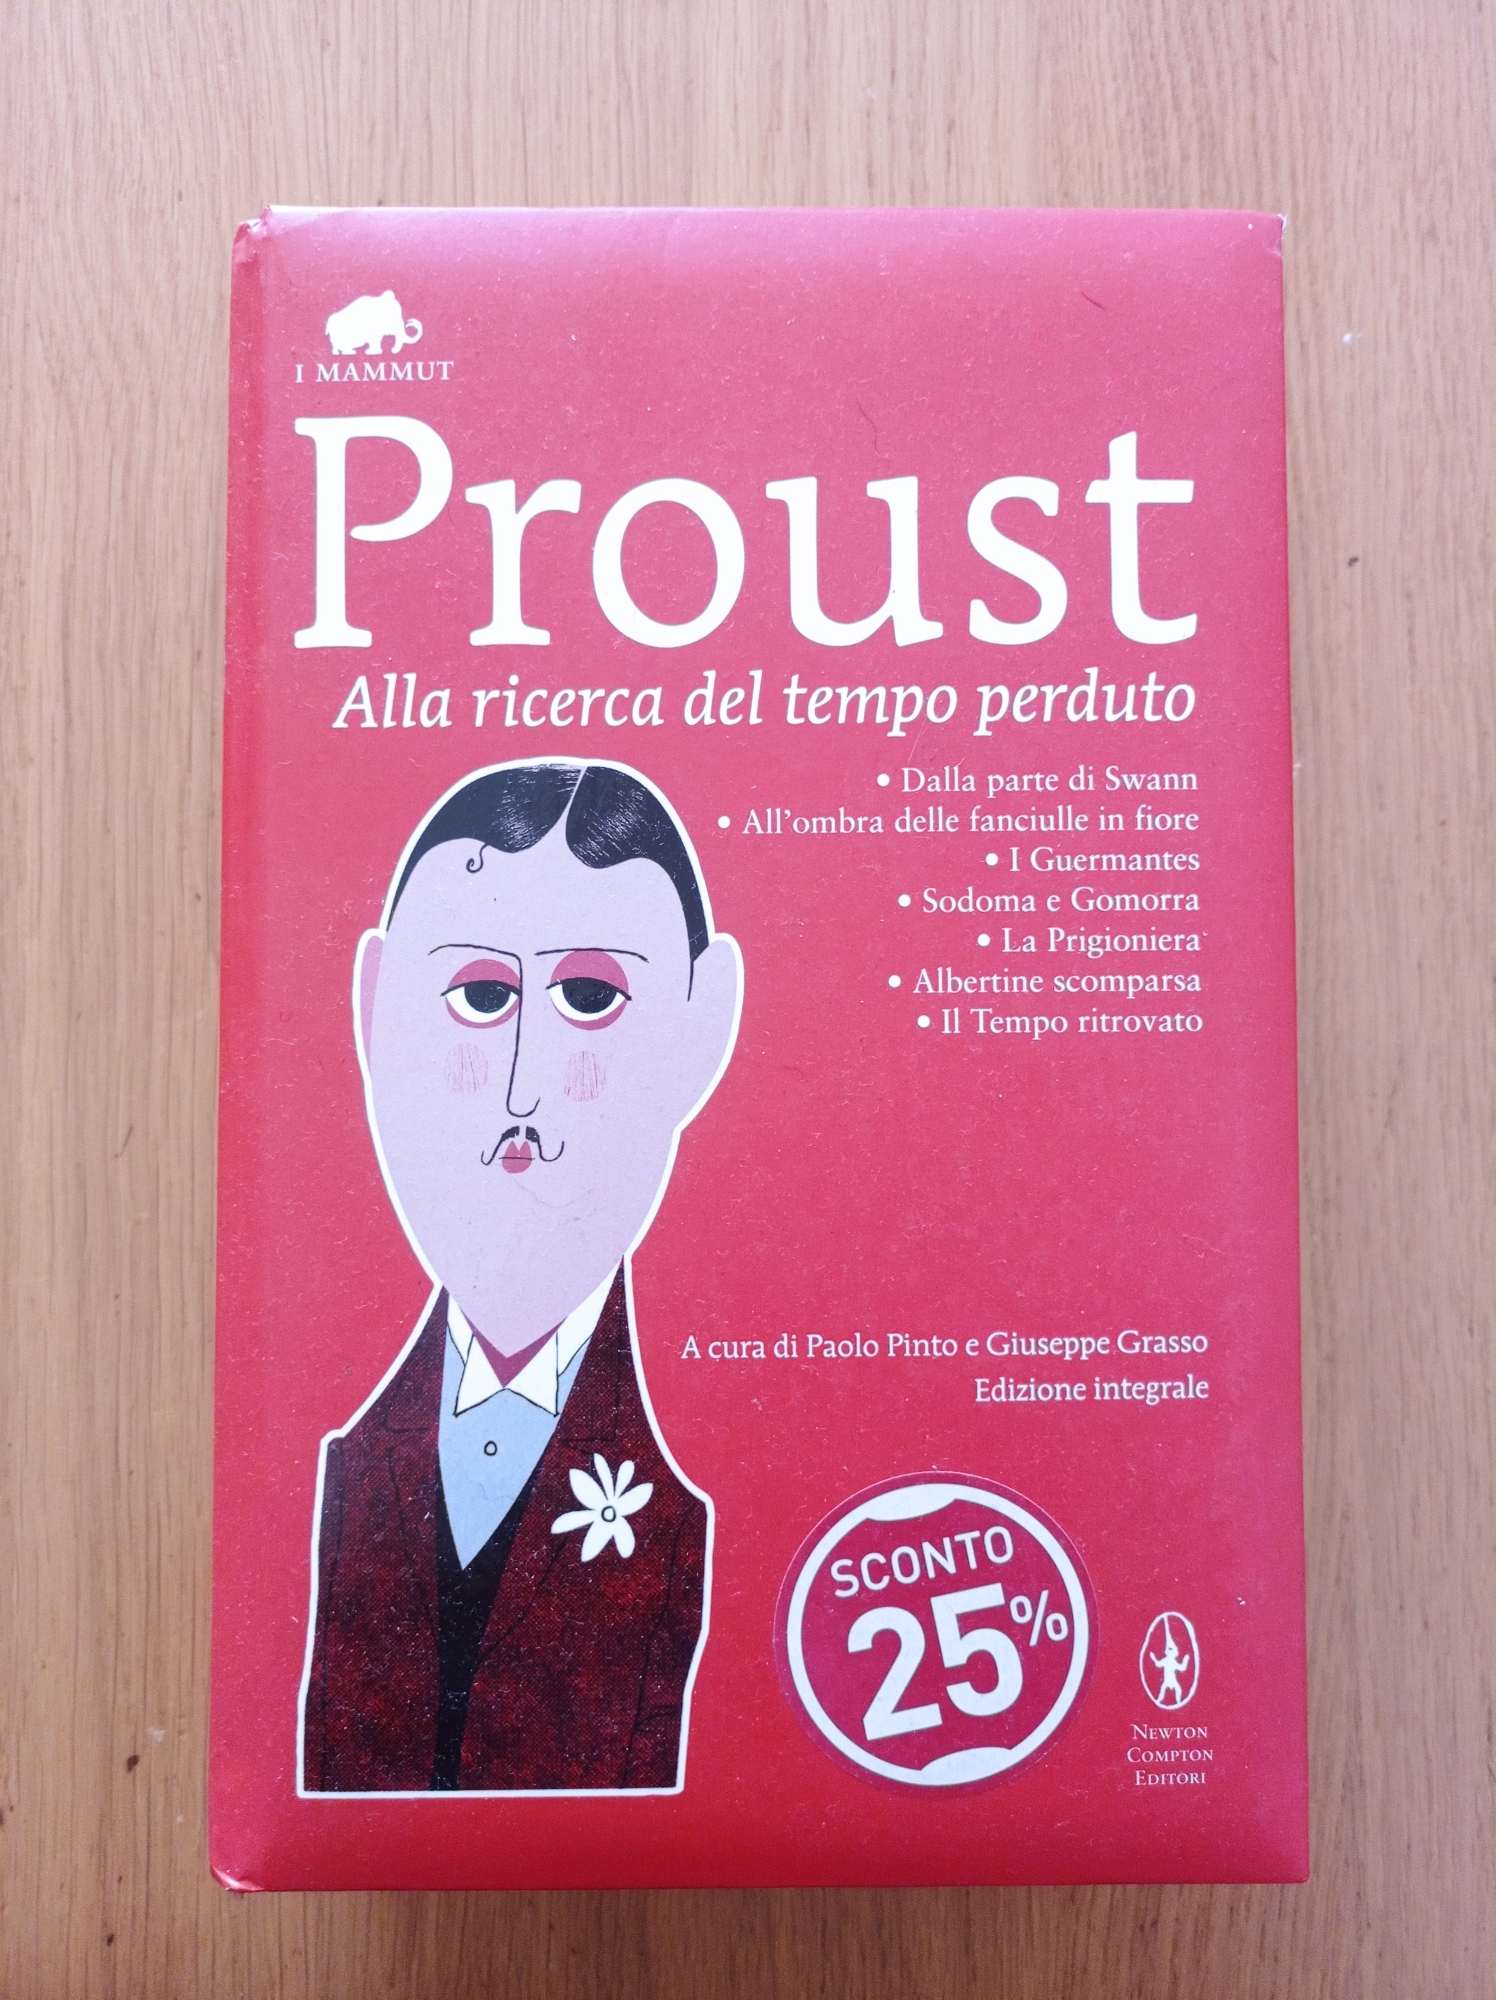 Alla ricerca del tempo perduto - Proust